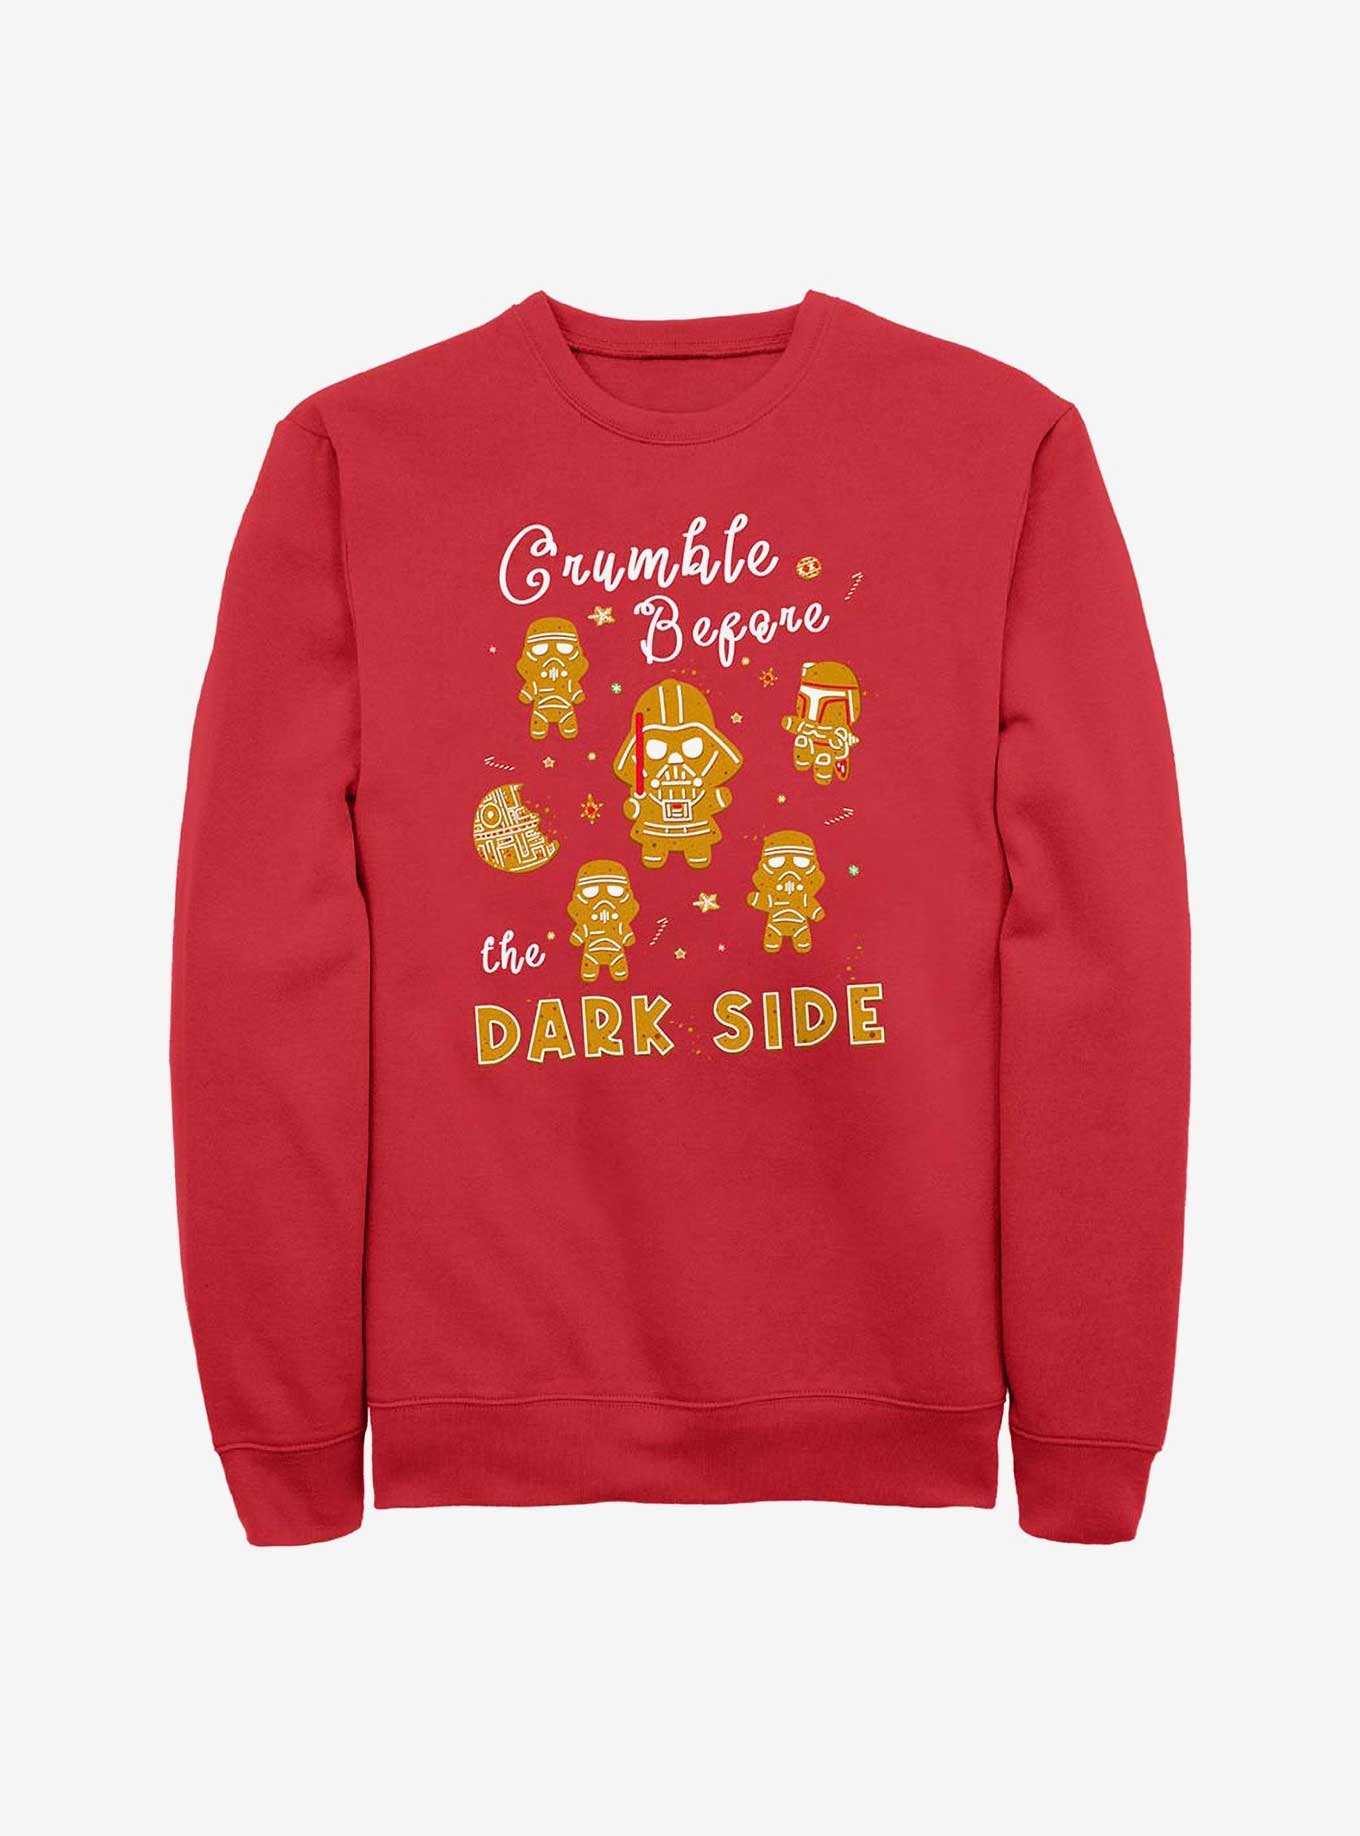 Star Wars Crumble Before The Dark Side Cookies Sweatshirt, , hi-res